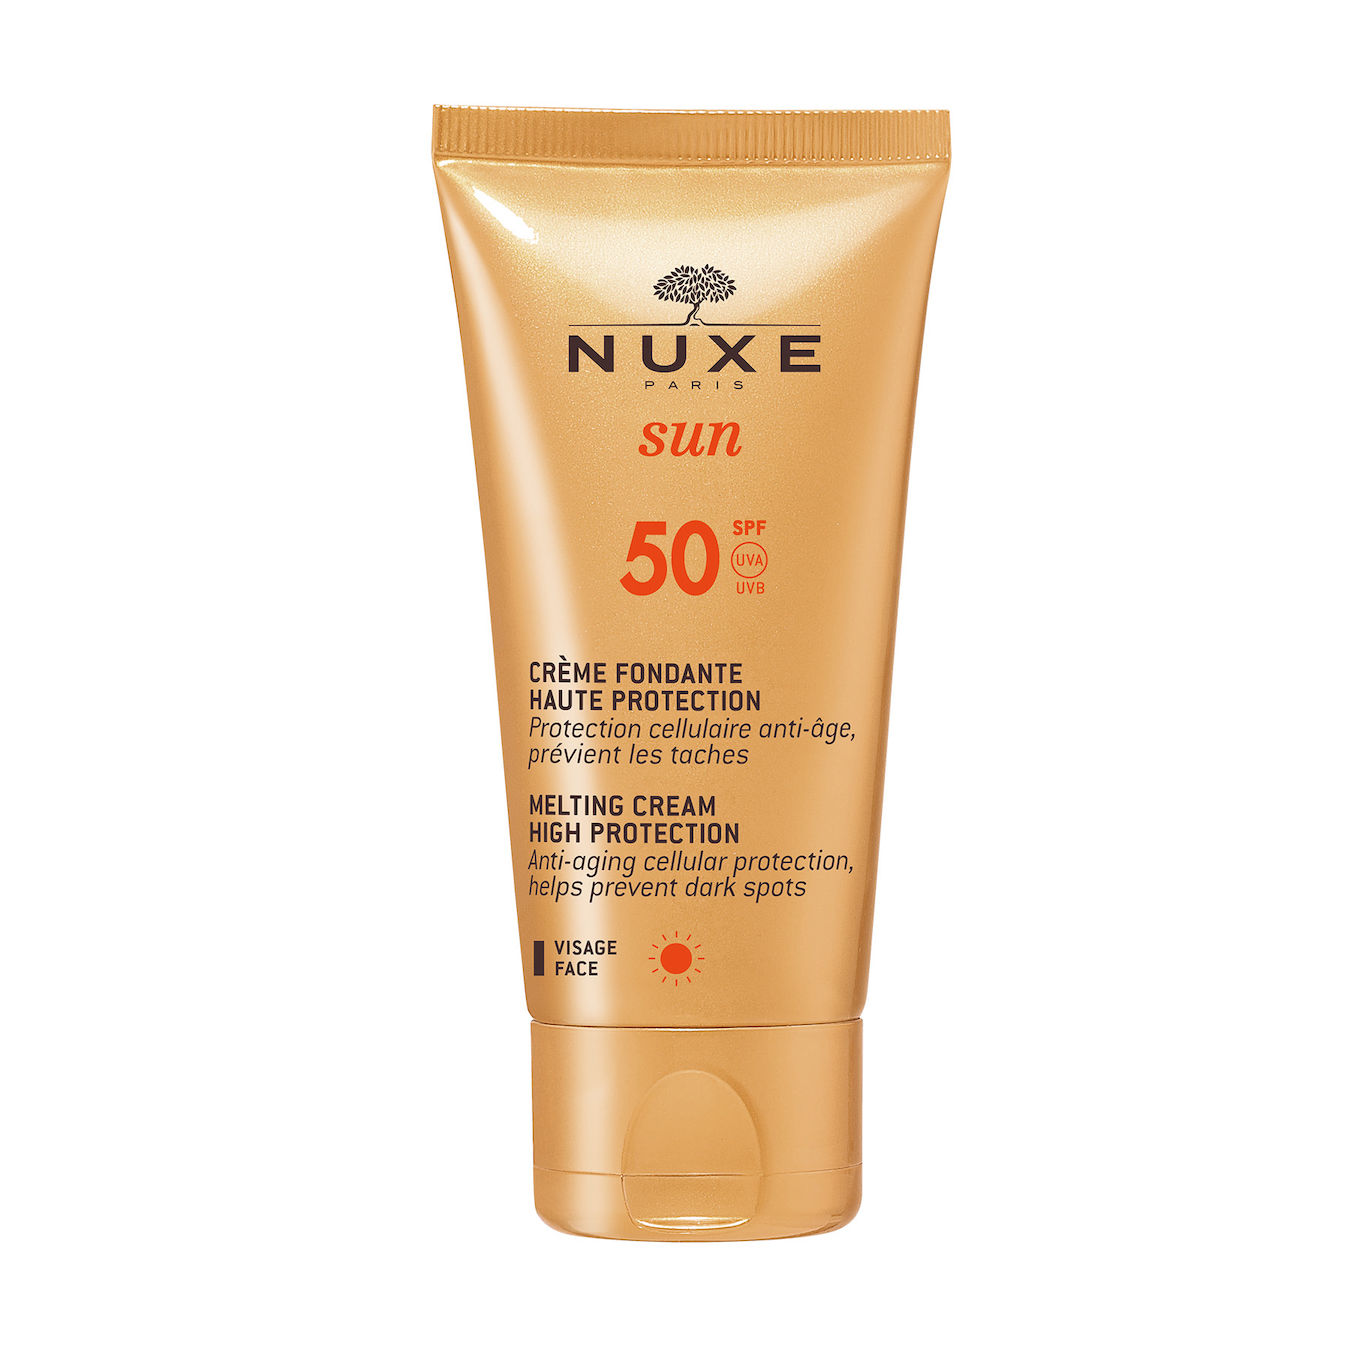 NUXE La Crème Visage Fondante Spf50 - Haute Protection Unisex 50ml